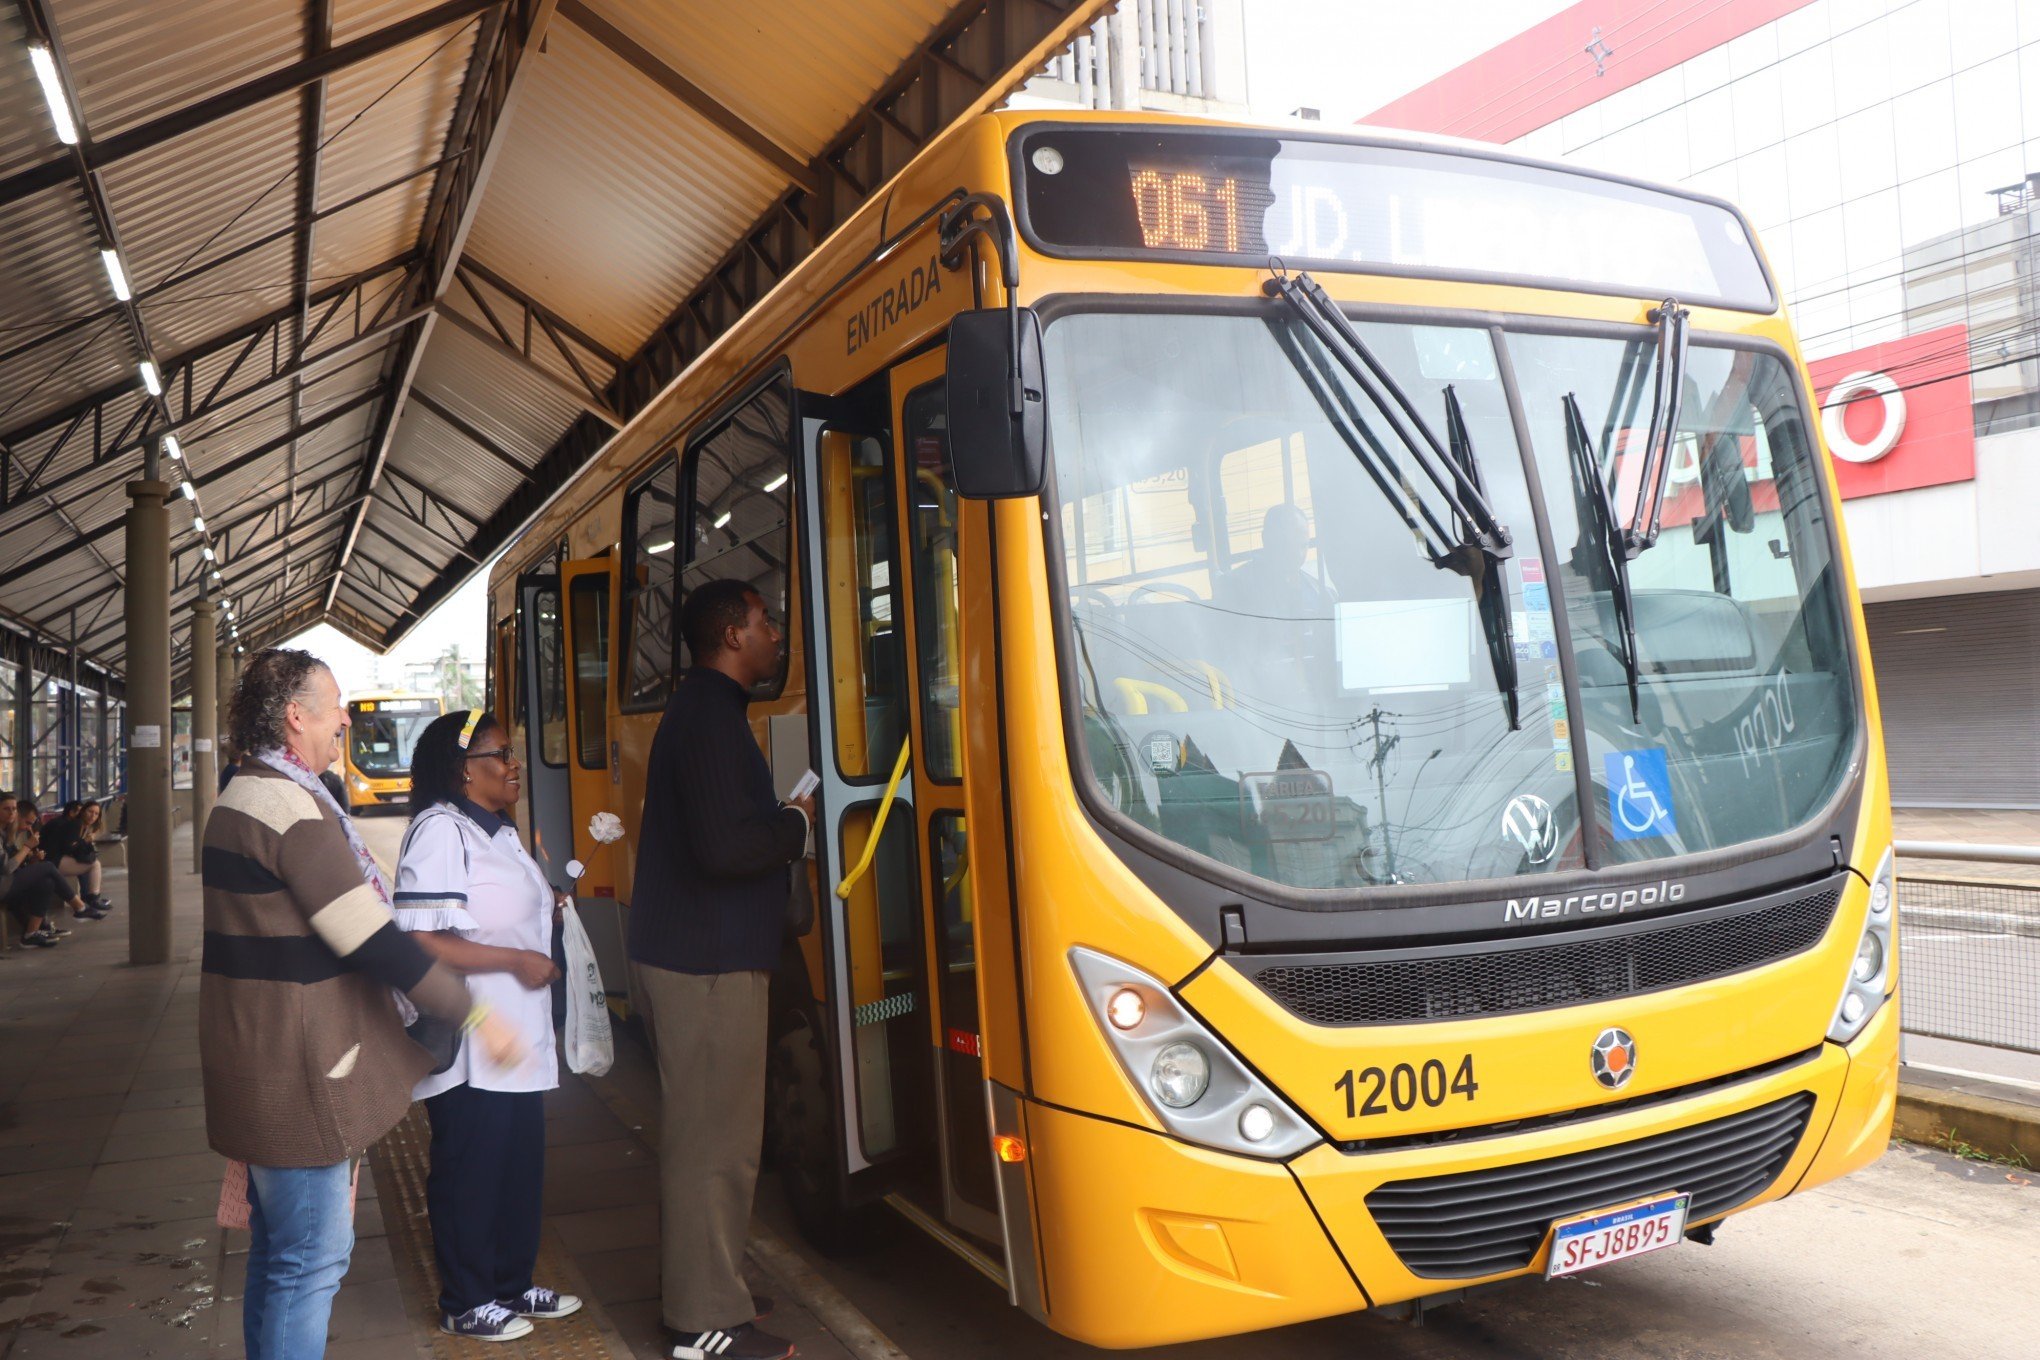 NOVO HAMBURGO: Ônibus voltam a circular com grade de horário completa a partir desta terça-feira